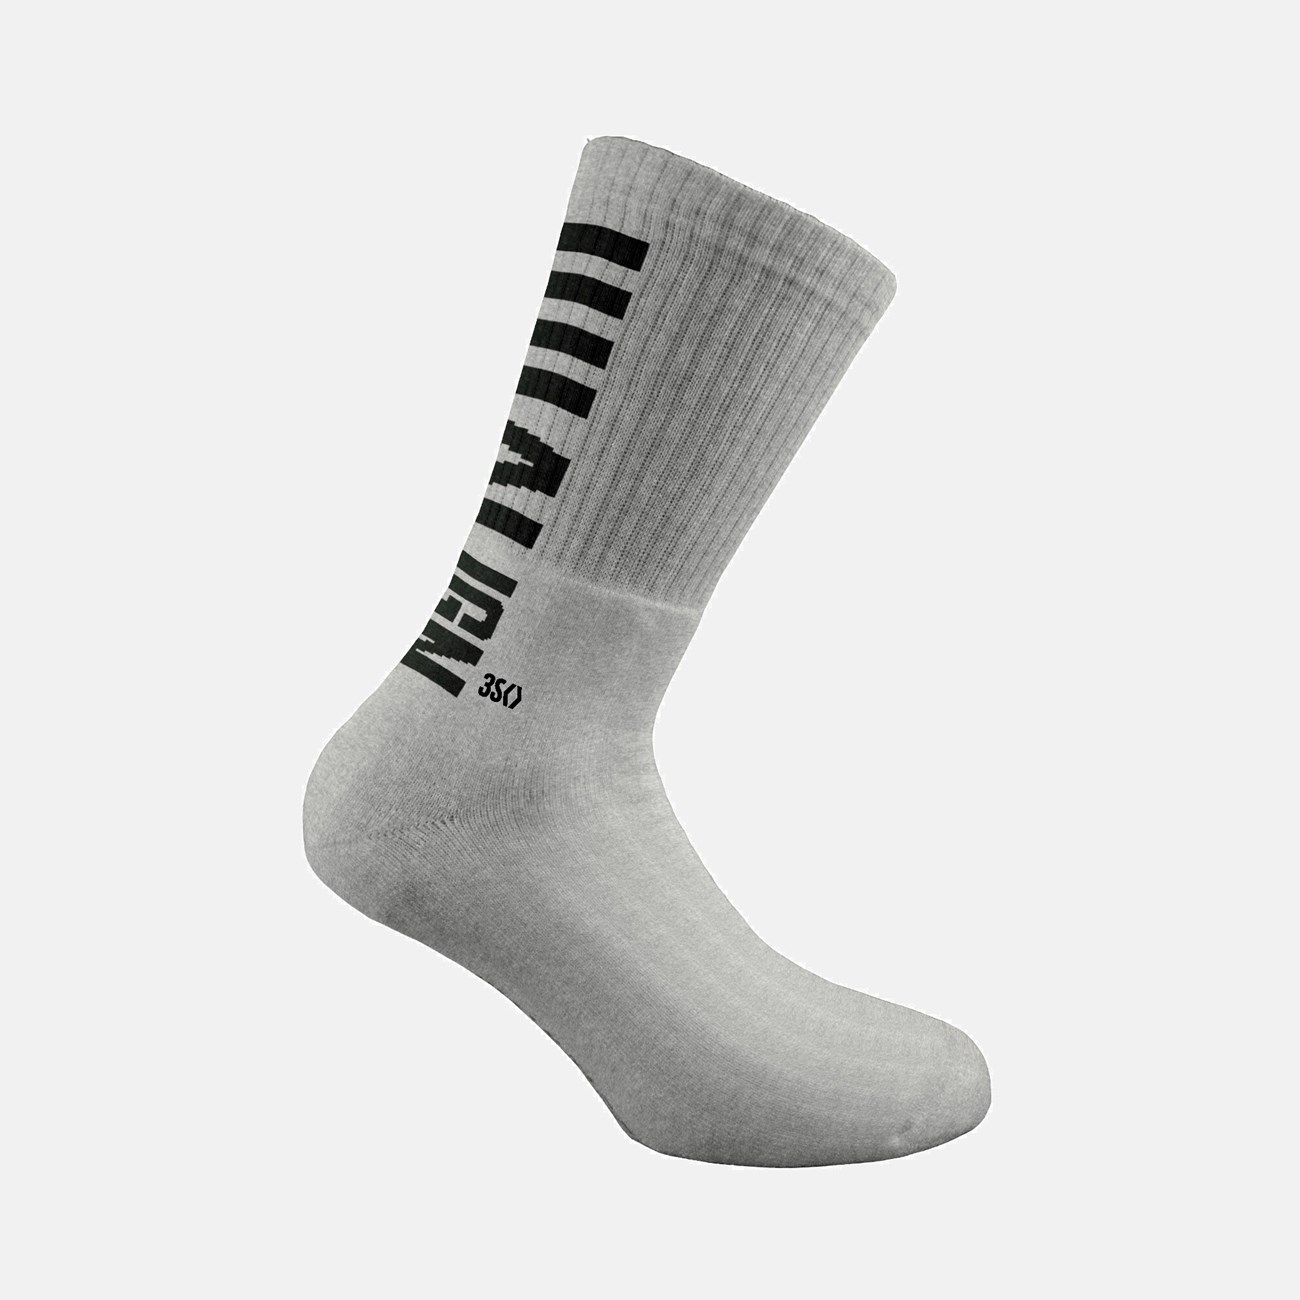  Γυναικείες Κάλτσες Latin 360 S502-8W-14 - The Athlete's Foot